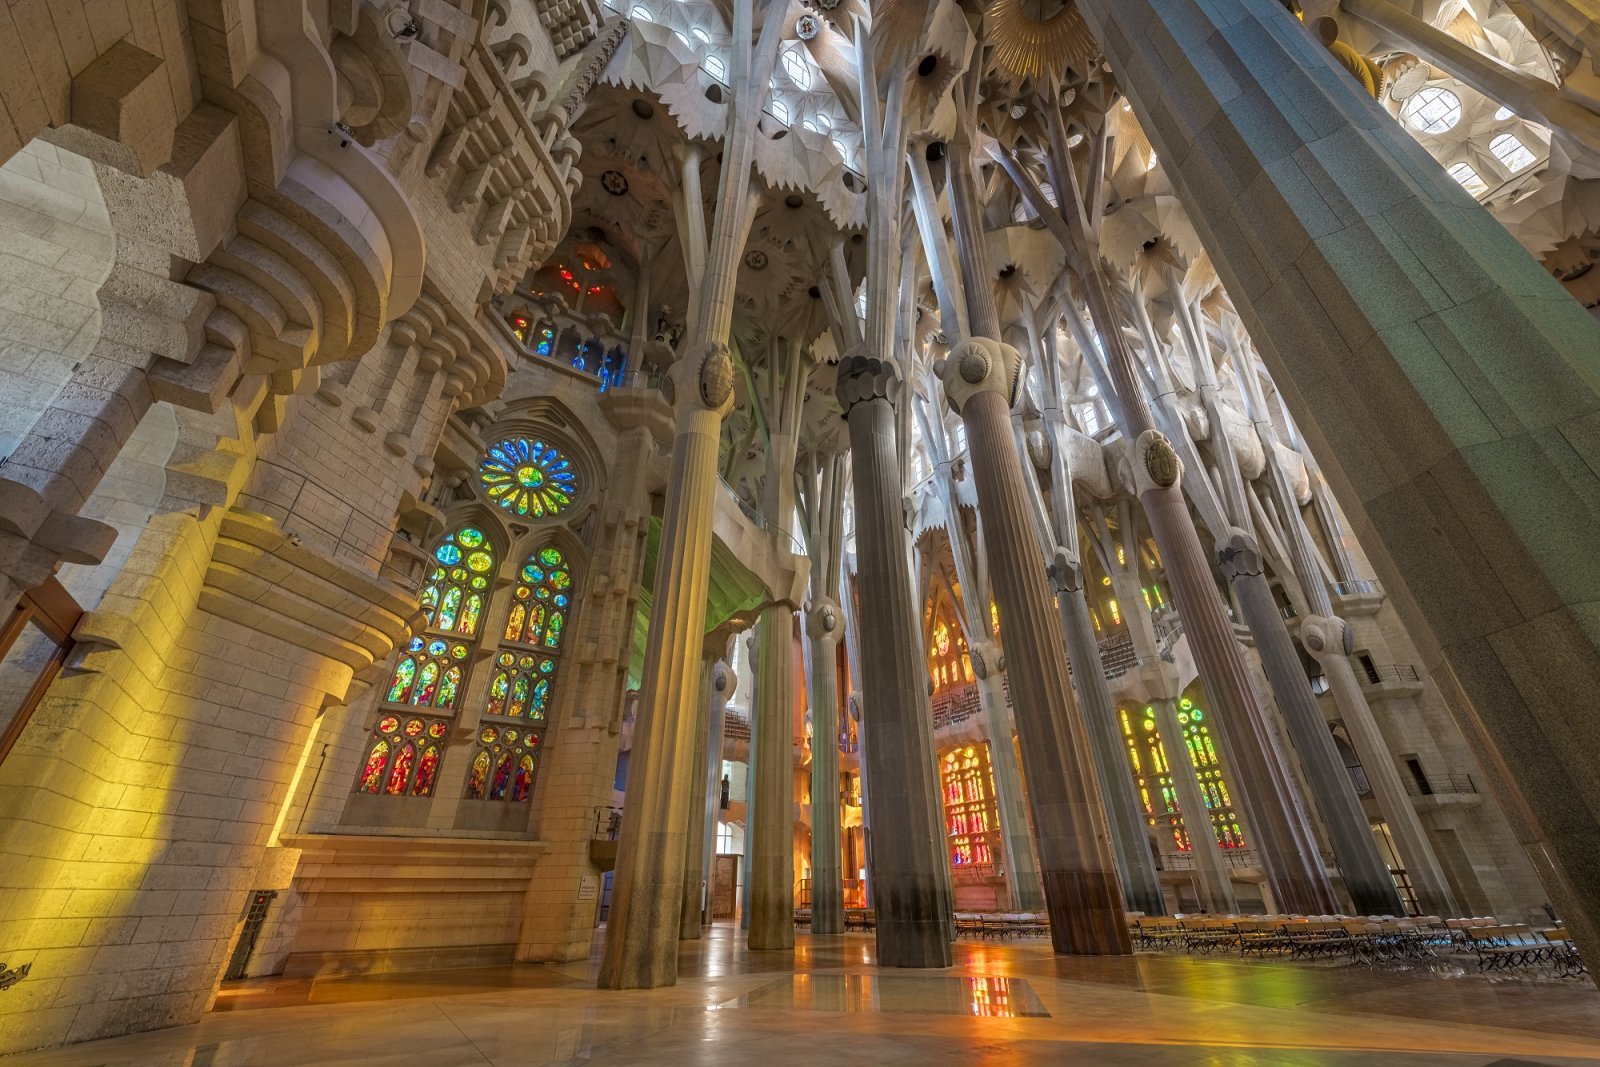 1_サグラダ・ファミリア聖堂の内観_ ©Fundació Junta Constructora del Temple Expiatori de la Sagrada Família.jpg